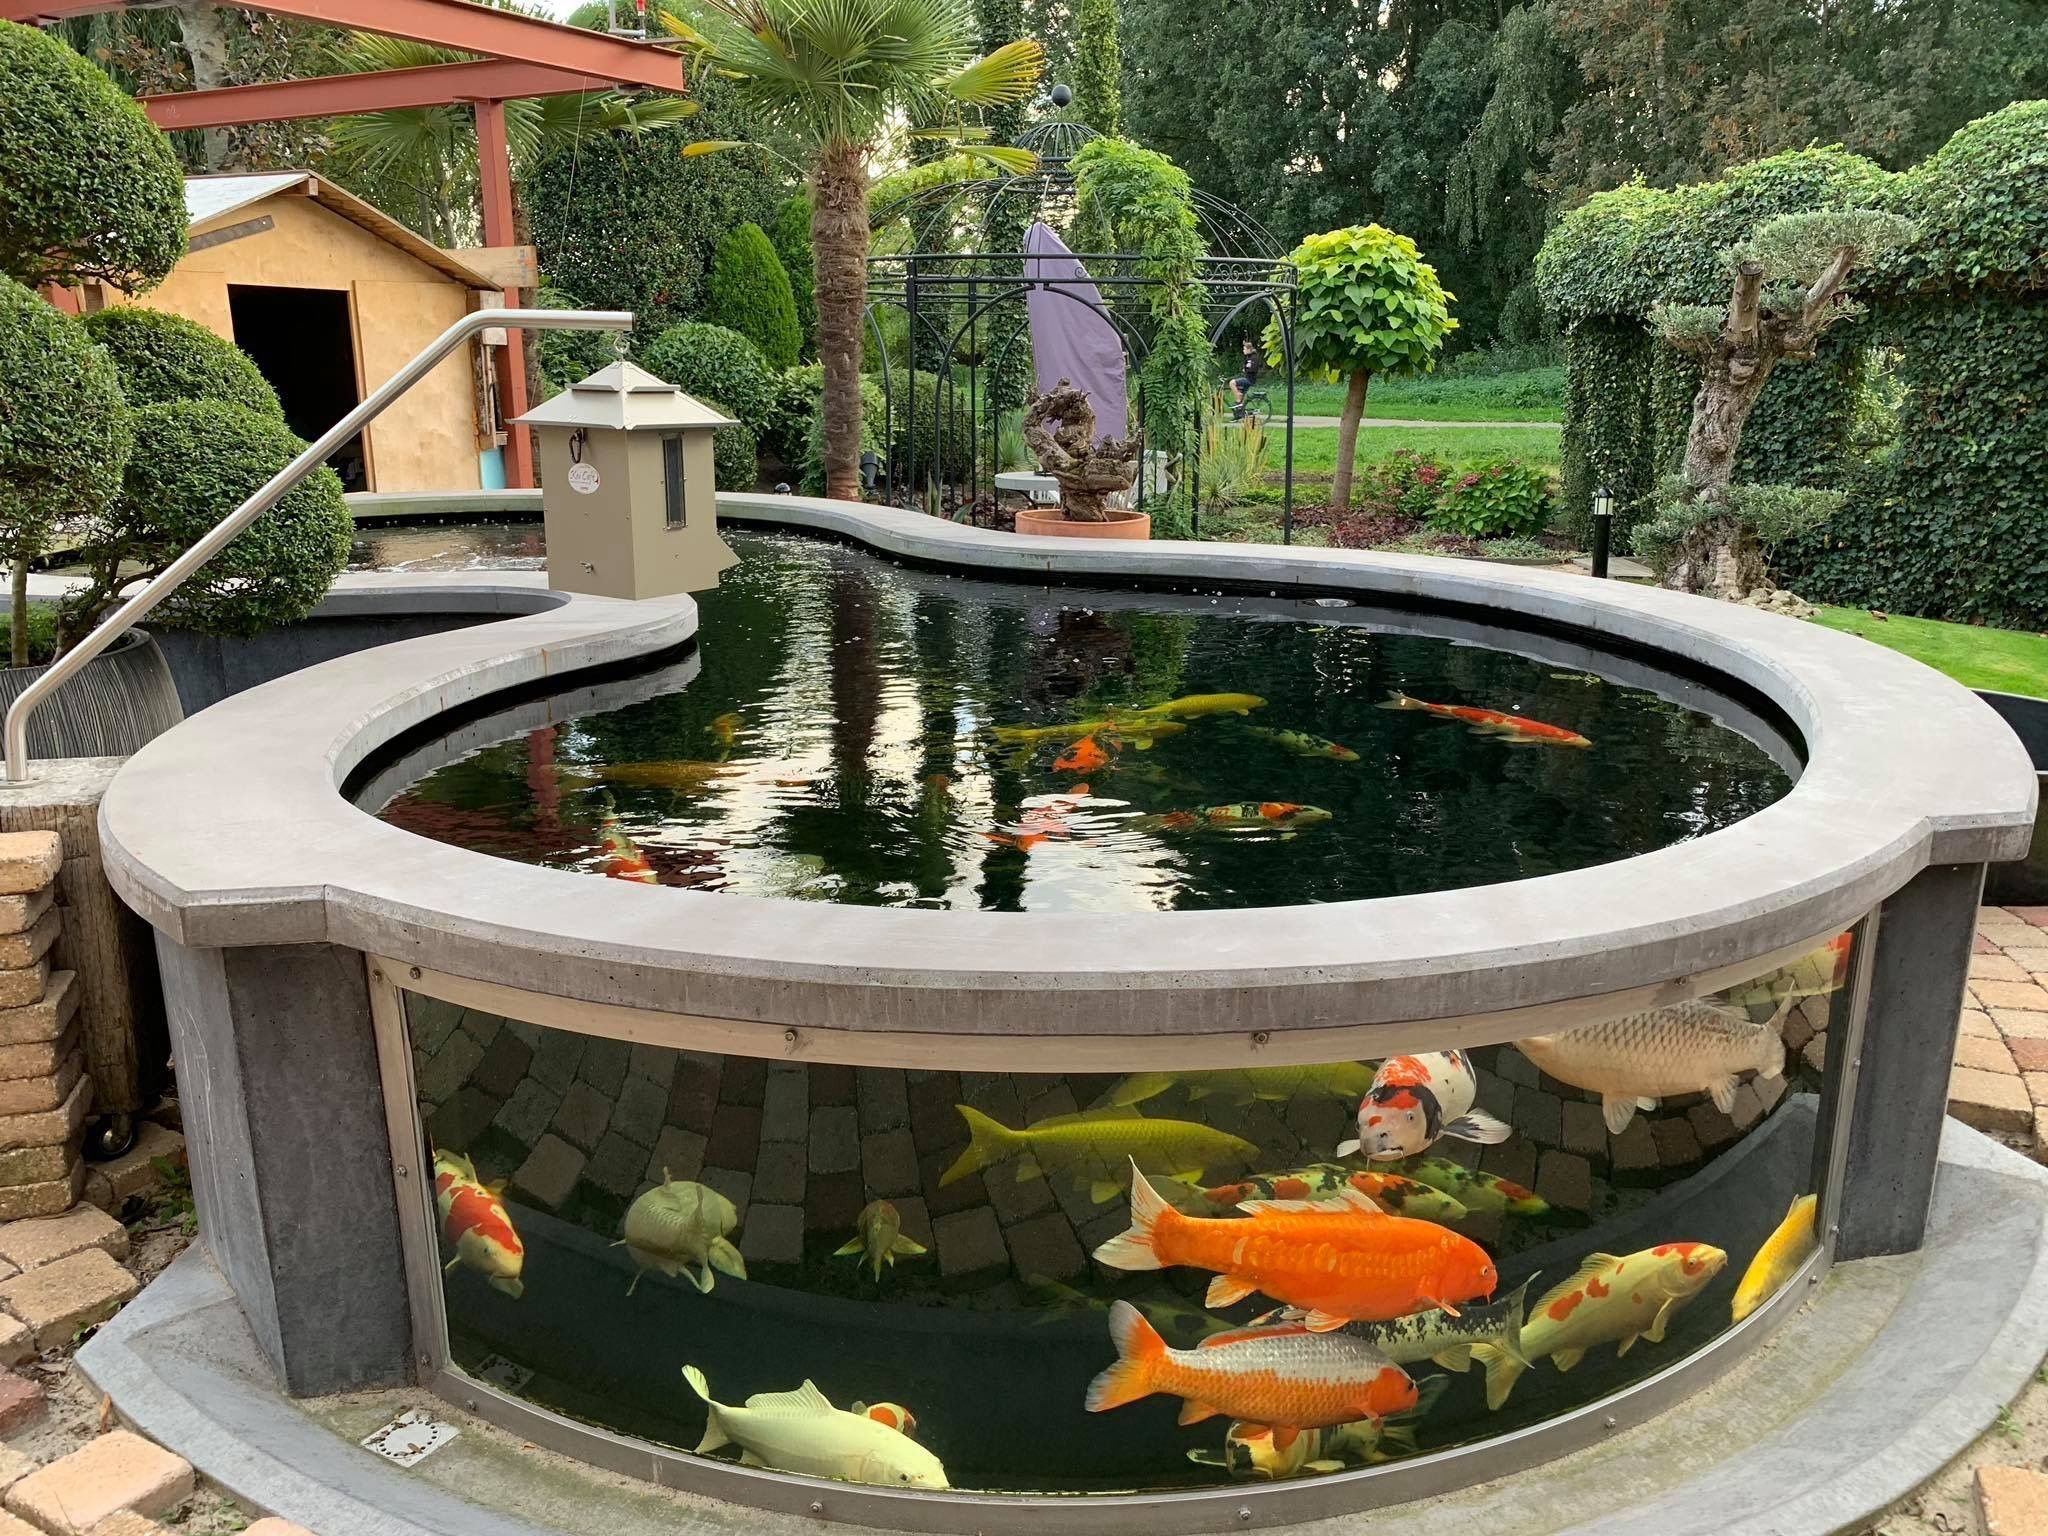 Аквариум в водоеме. Прудик в саду. Прудик с рыбками. Уличный аквариум. Ландшафтный пруд с рыбками.